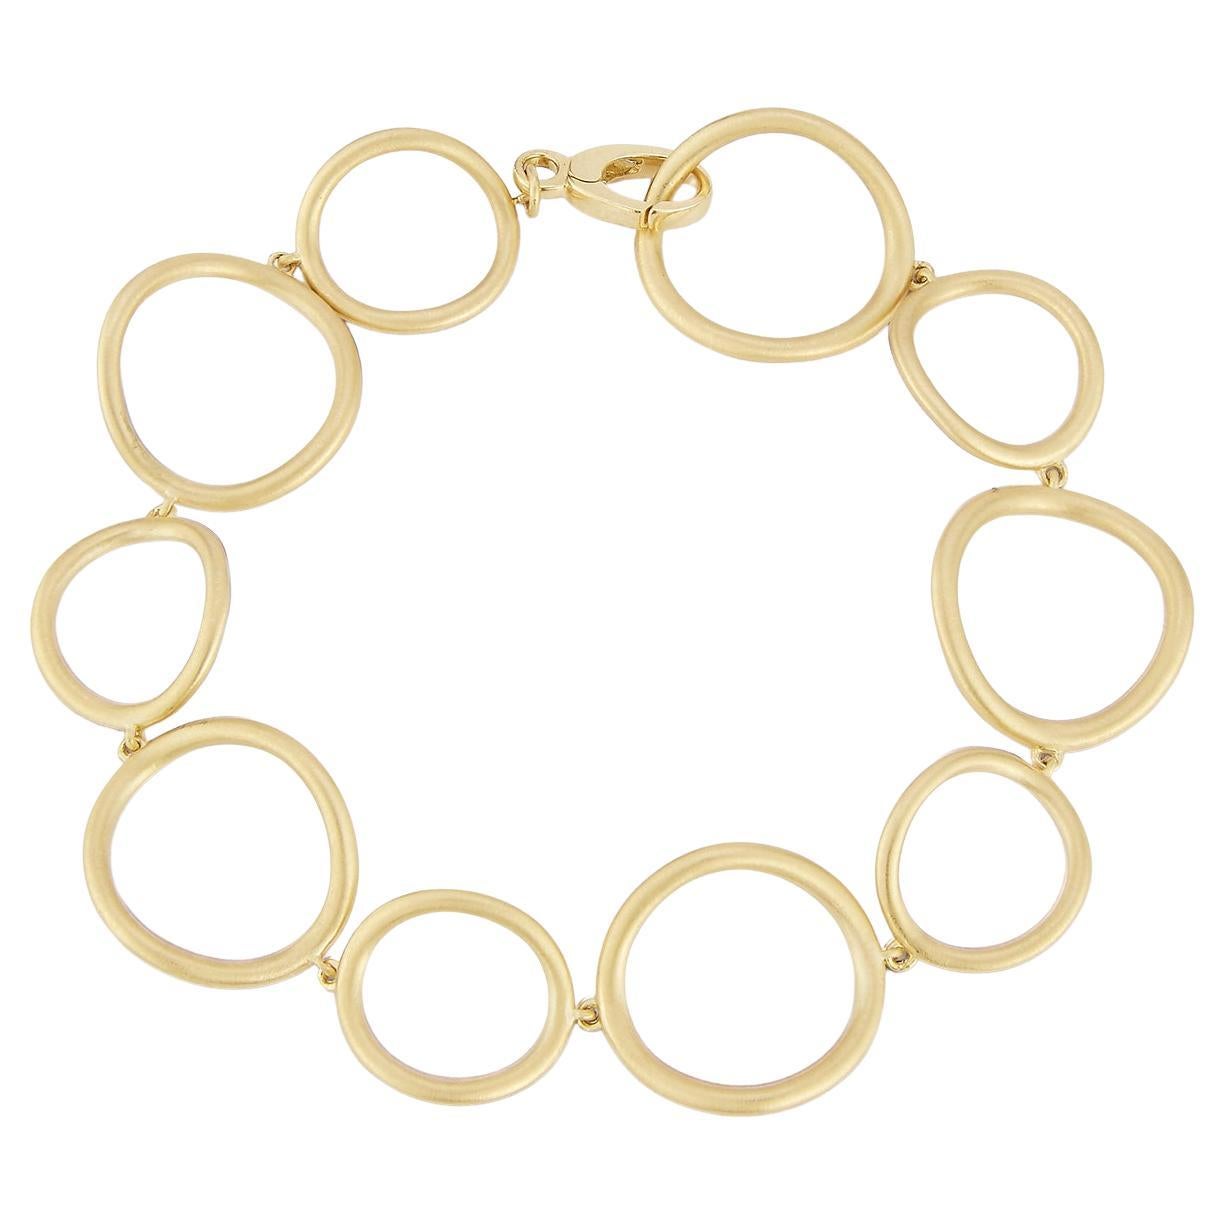 Carelle Spiralli Brushed Satin Gold Bracelet